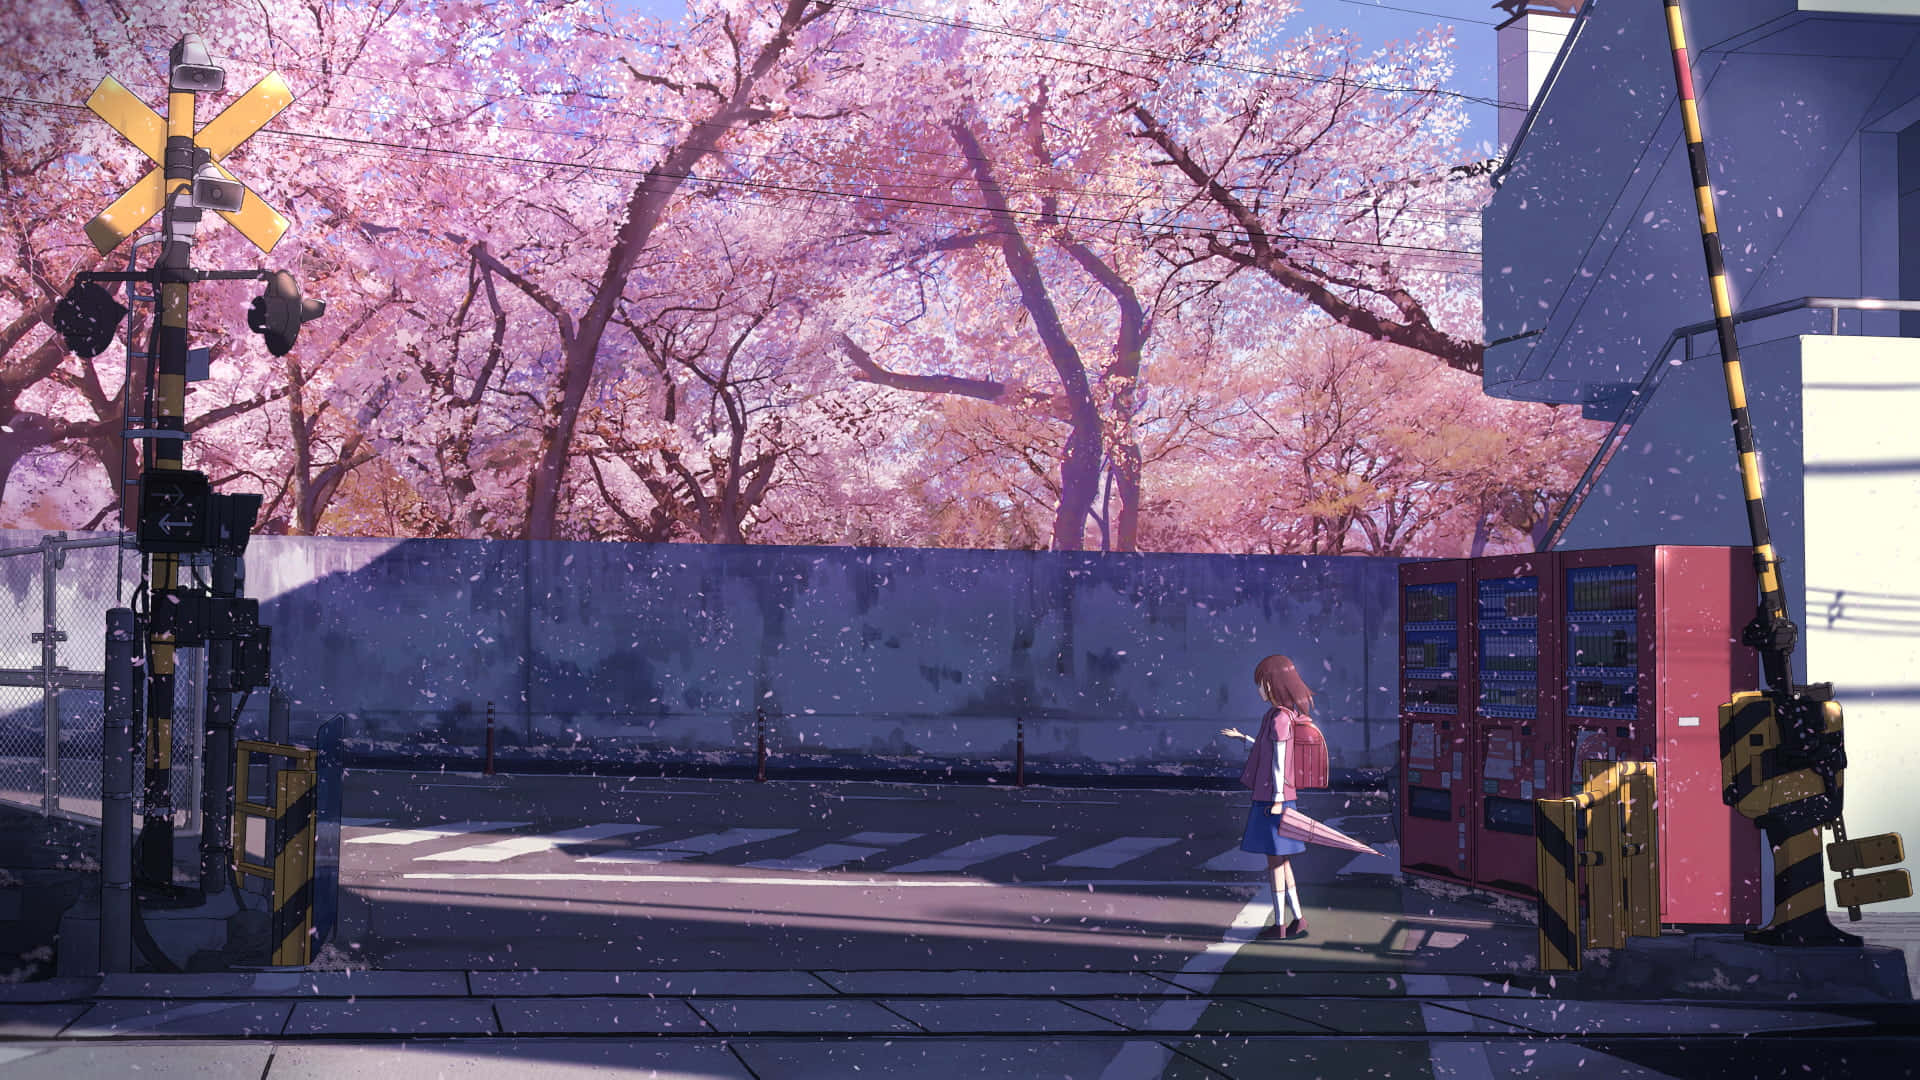 Fondode Pantalla De Una Chica De Anime Caminando Entre Cerezos En Flor.